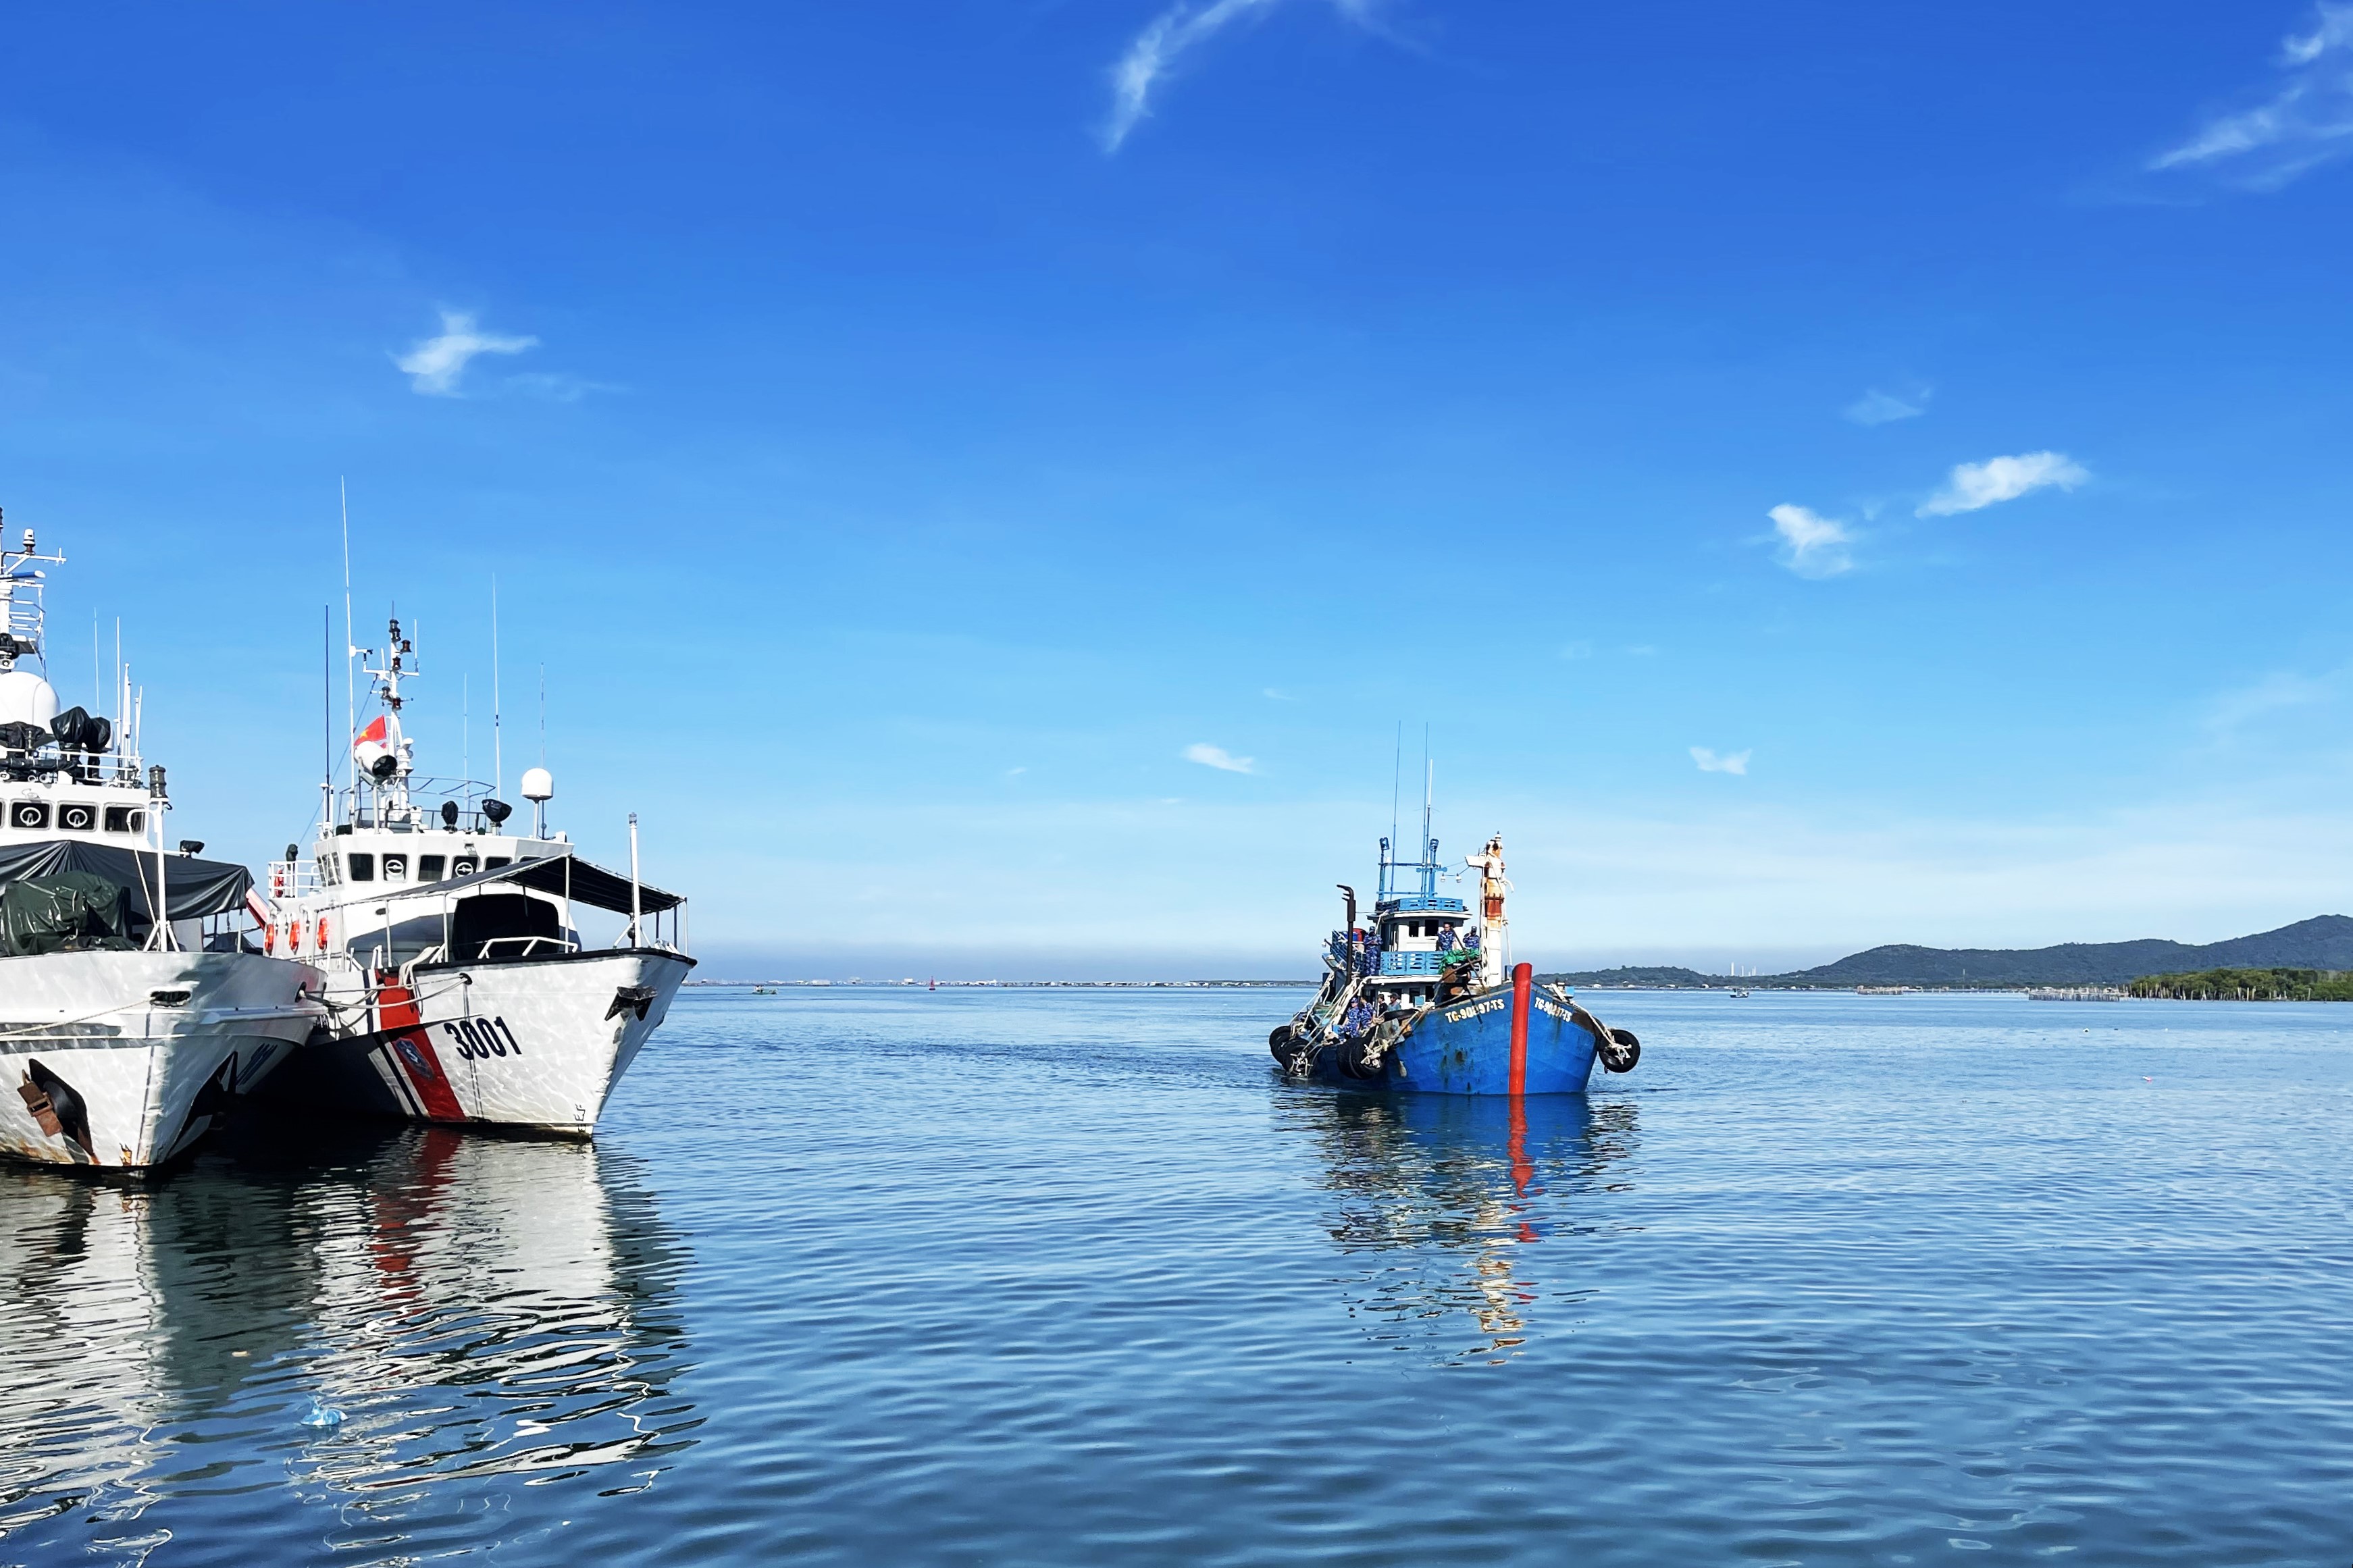 Cảnh sát biển bắt giữ tàu chở 80.000 lít dầu không rõ nguồn gốc